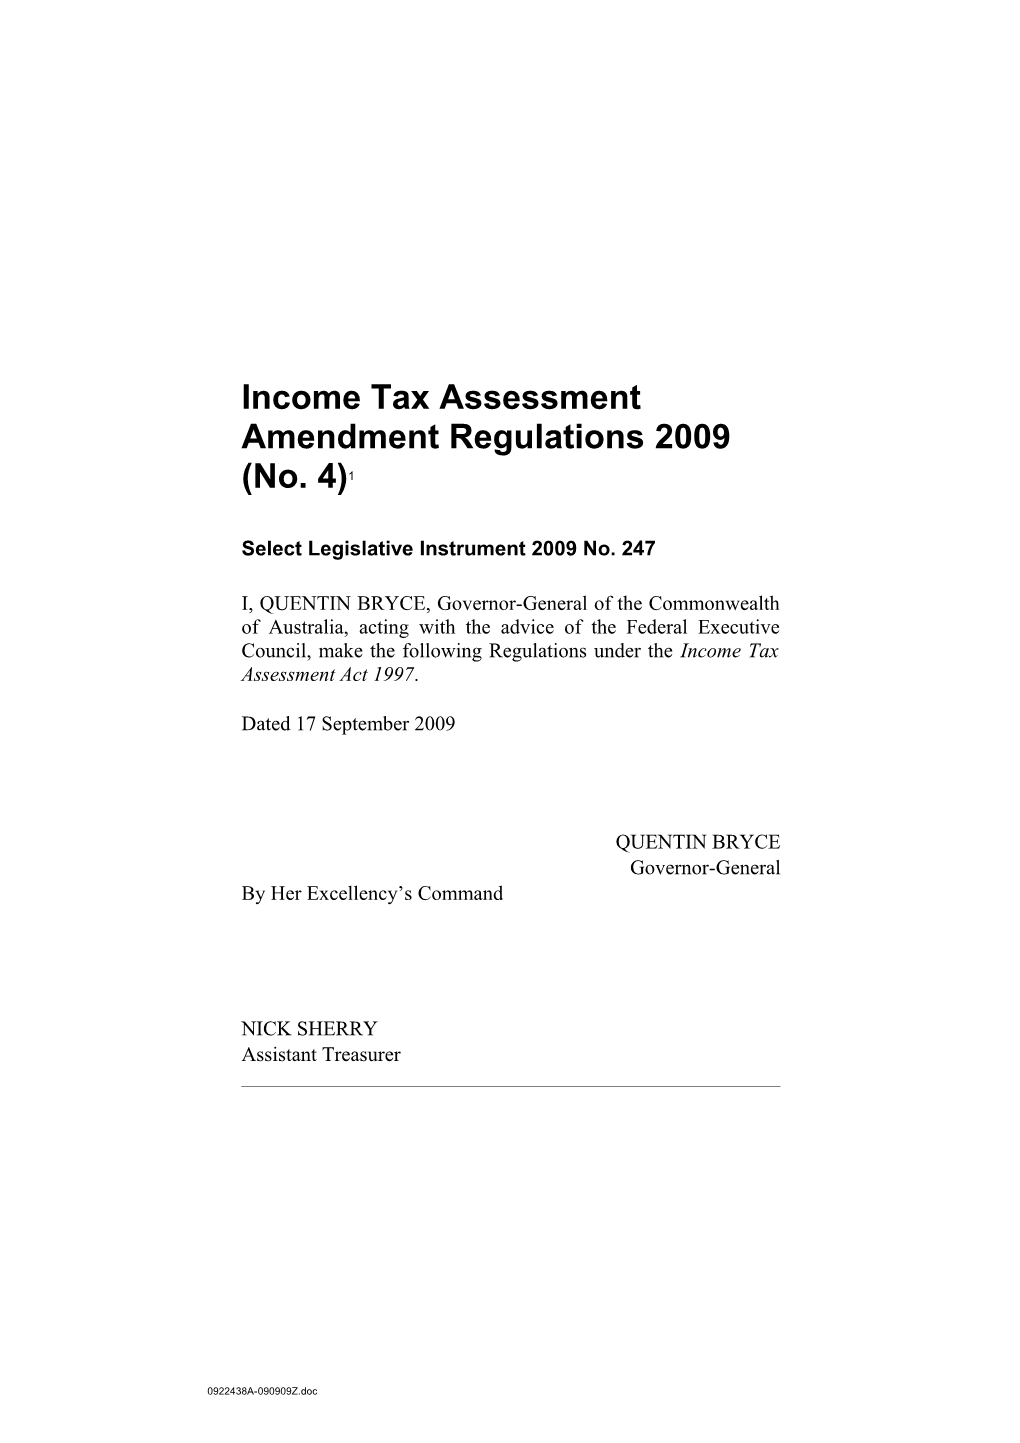 Income Tax Assessment Amendment Regulations 2009 (No. )